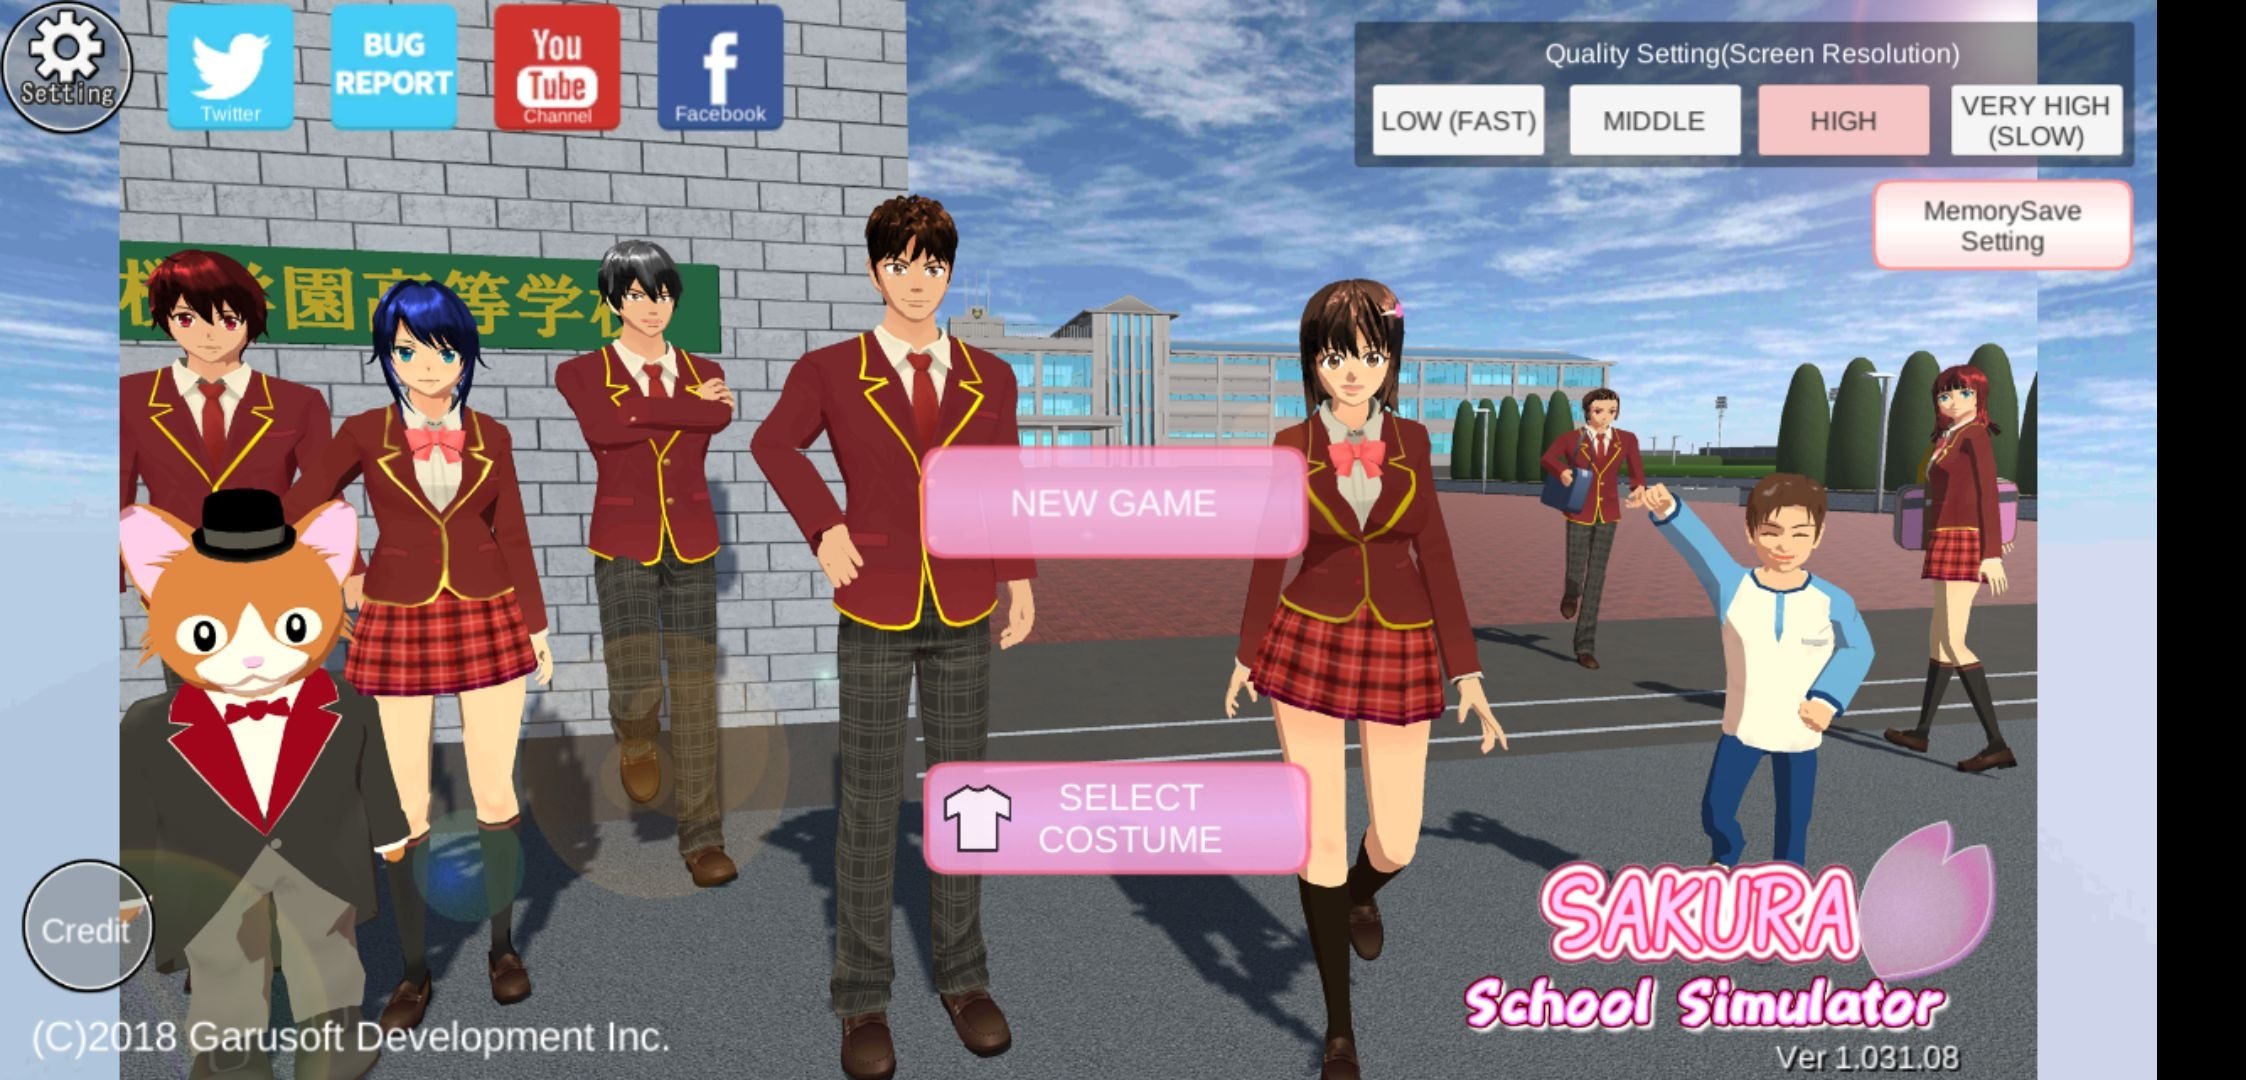 Sakura school simulator versi terbaru